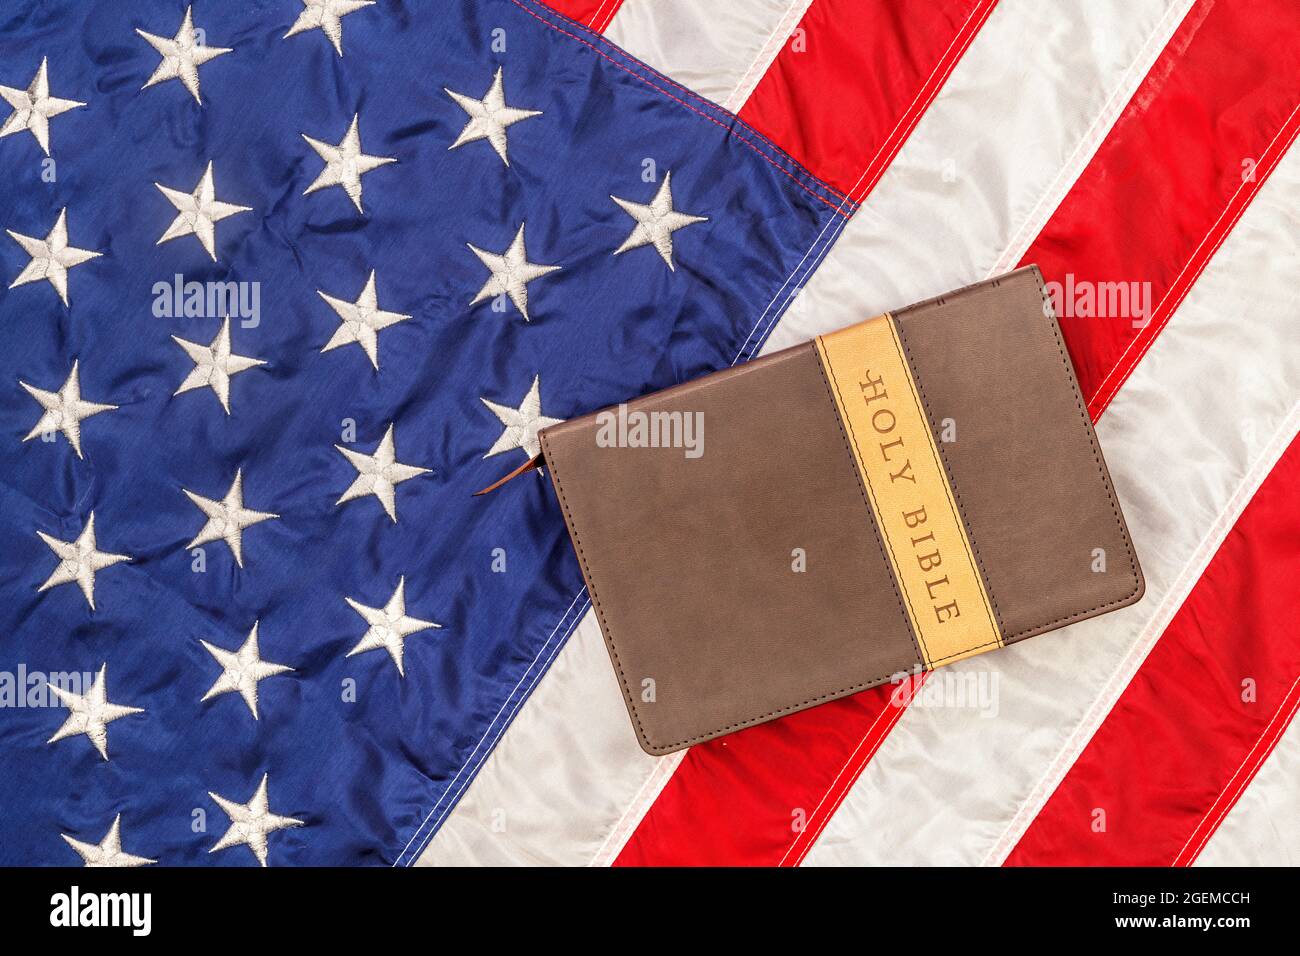 Una bibbia sacra si trova in cima alla bandiera americana degli Stati Uniti, che è emblematica della libertà di religione senza persecuzione. Foto Stock